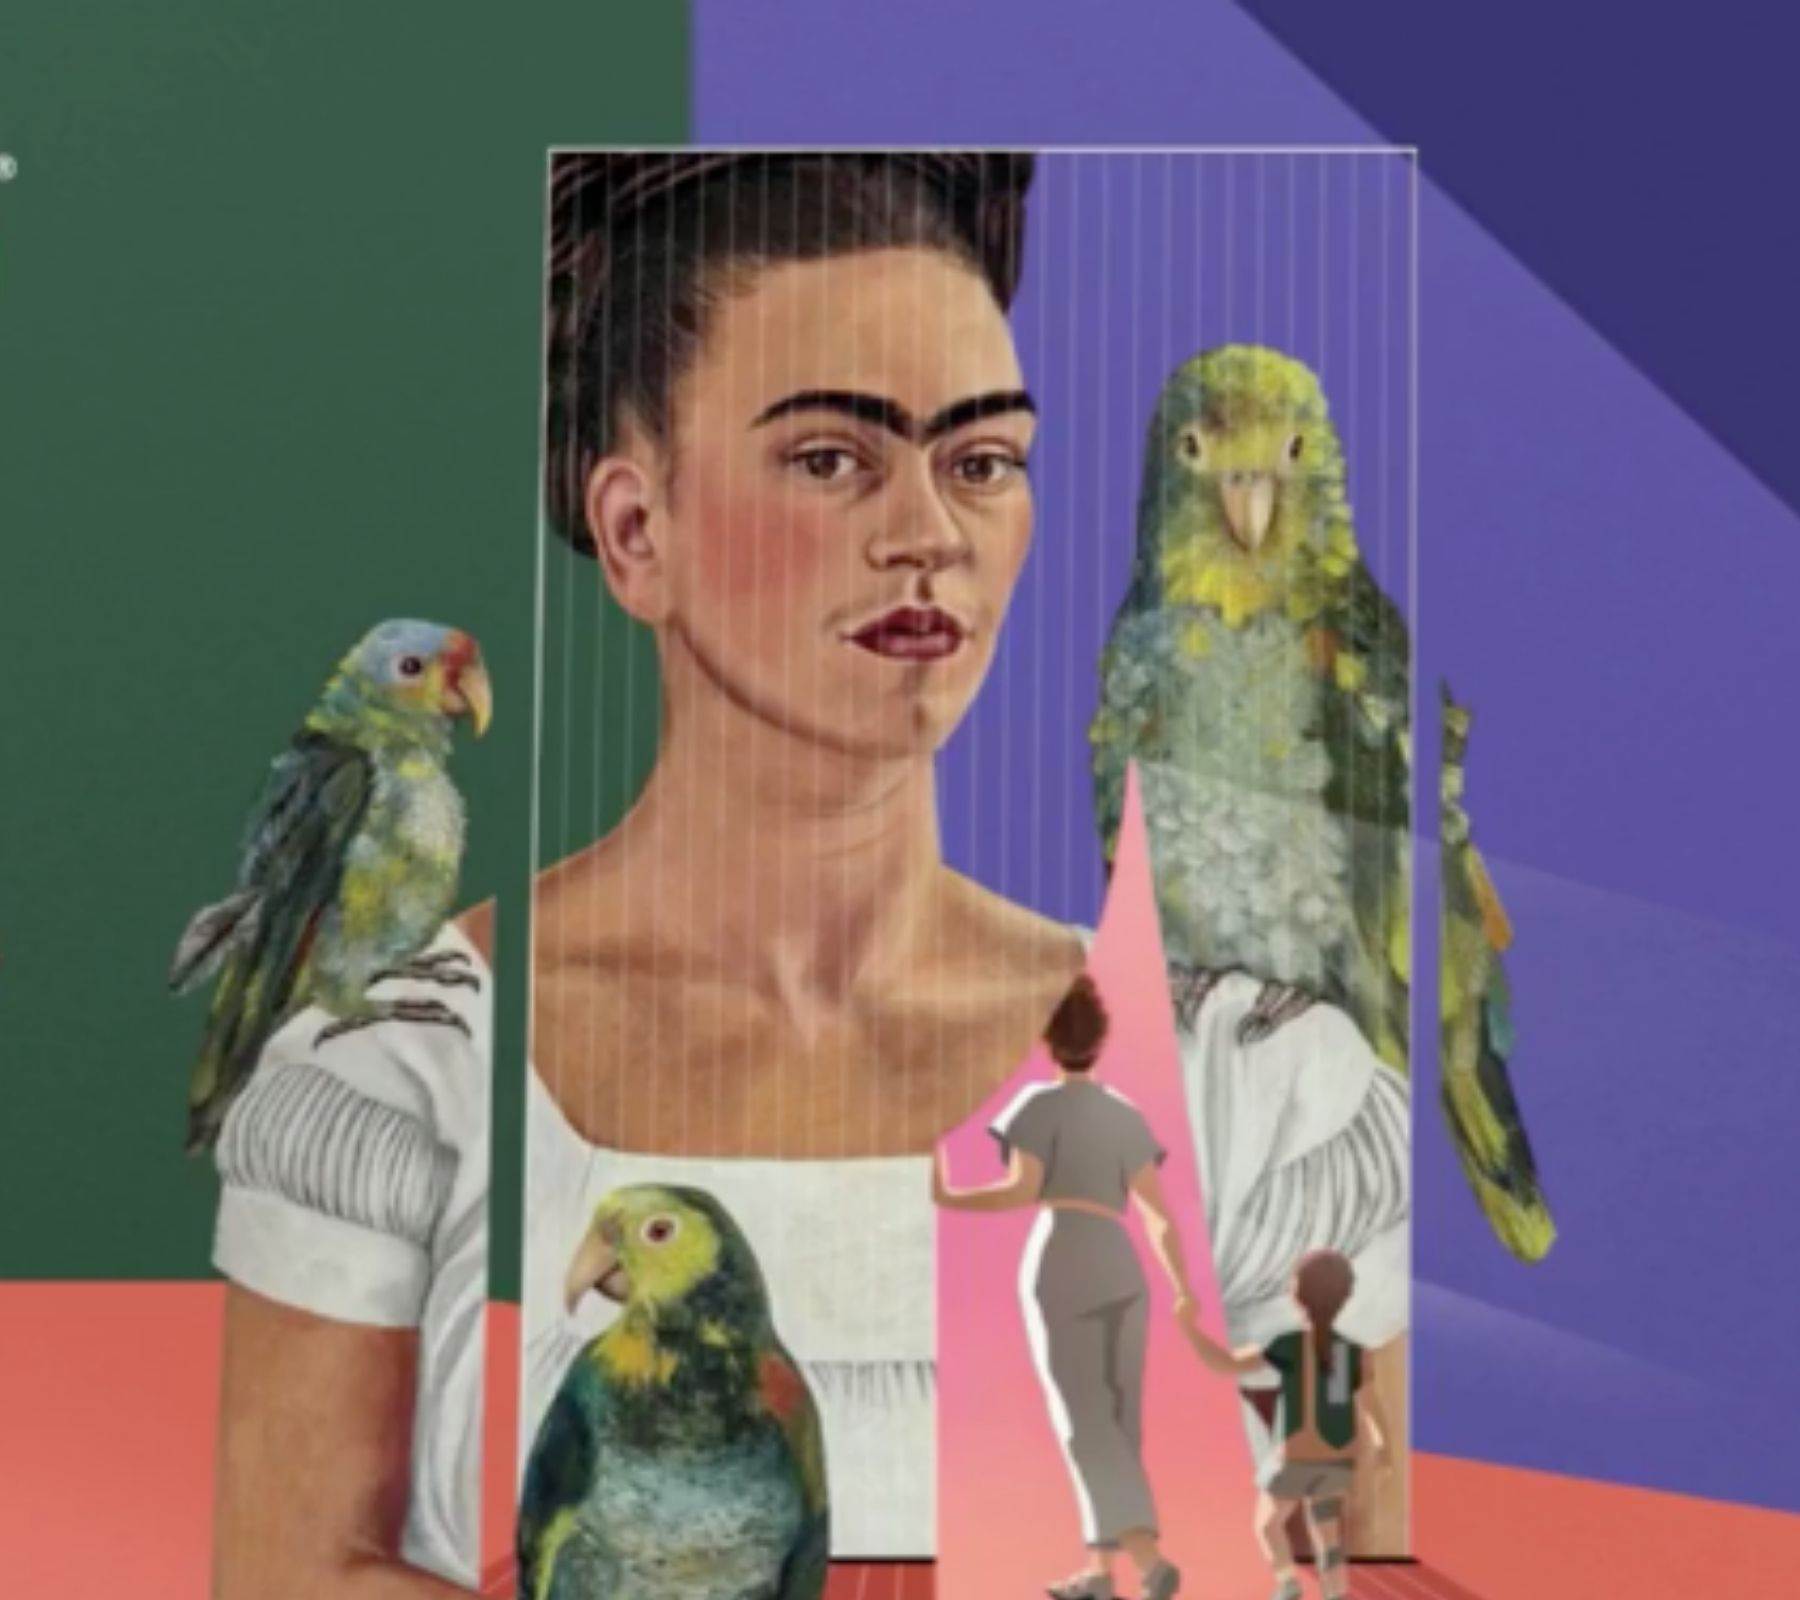 exposición inmersiva de Frida kahlo